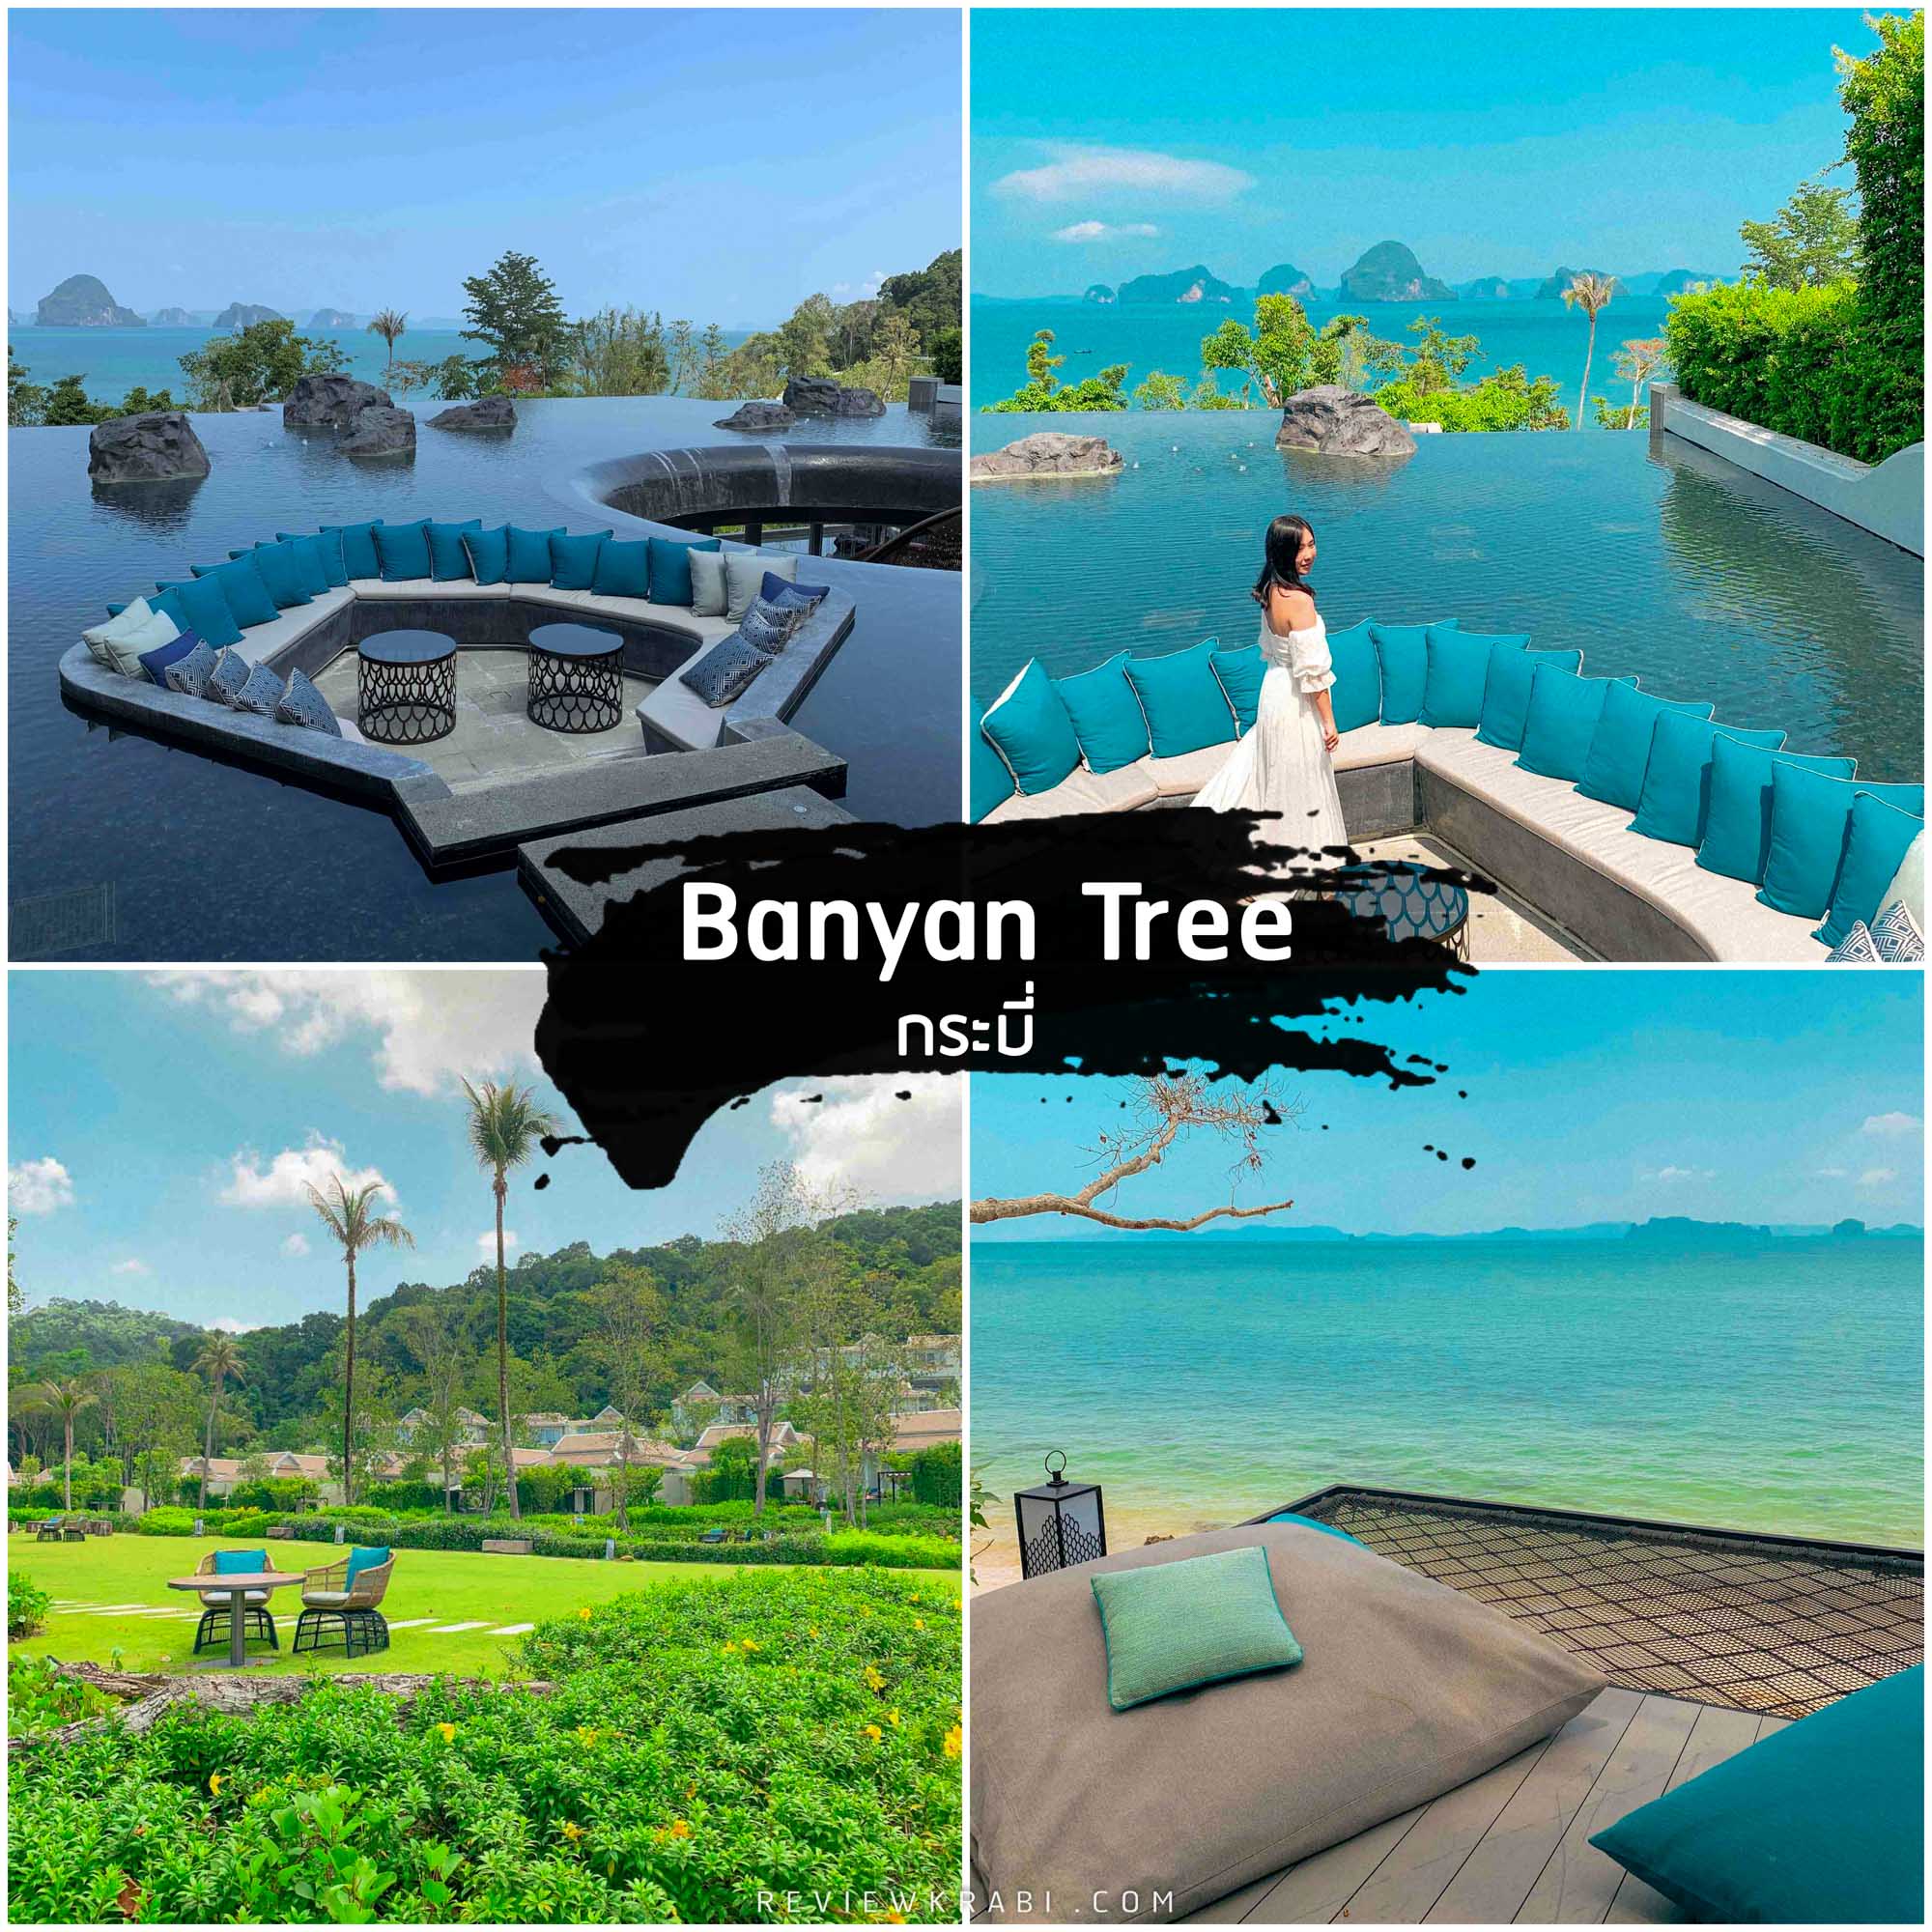 Banyan-Tree-กระบี่ -ที่พักกระบี่-สุดสวยวิวหลักล้าน-วิวทะเล-ภูเขาพร้อมหญ้าสีเขียวๆ-ฟินมากก-มีมุมลับๆน่ารักๆมากมาย-พักผ่อนนอนเล่นในห้องพักหลากหลายสไตล์ที่กว้างขวางไปจนถึงวิลล่าสุดหรูริมหาดทับแขก-ว่ายน้ำในสระส่วนตัวได้ตลอด-24-ชม.-กันเลยทีเดียว-การออกแบบโดดเด่นผสมผสานฟิวชั่นของสถาปัตยกรรมตามความเชื่อของตำนานท้องถิ่นของหาดทับแขกเกี่ยวกับพญานาค-ผสมผสานกับความโมเดิร์นทันสมัยสะดวกสบายระดับ-5-ดาว-ทำให้ความสวยงามลงตัวไม่แพ้ที่ไหนเลยครับ-10/10 กระบี่,จุดเช็คอิน,ที่เที่ยว,ร้านกาแฟ,คาเฟ่,ทะเล,ภูเขา,ที่เที่ยวกระบี่